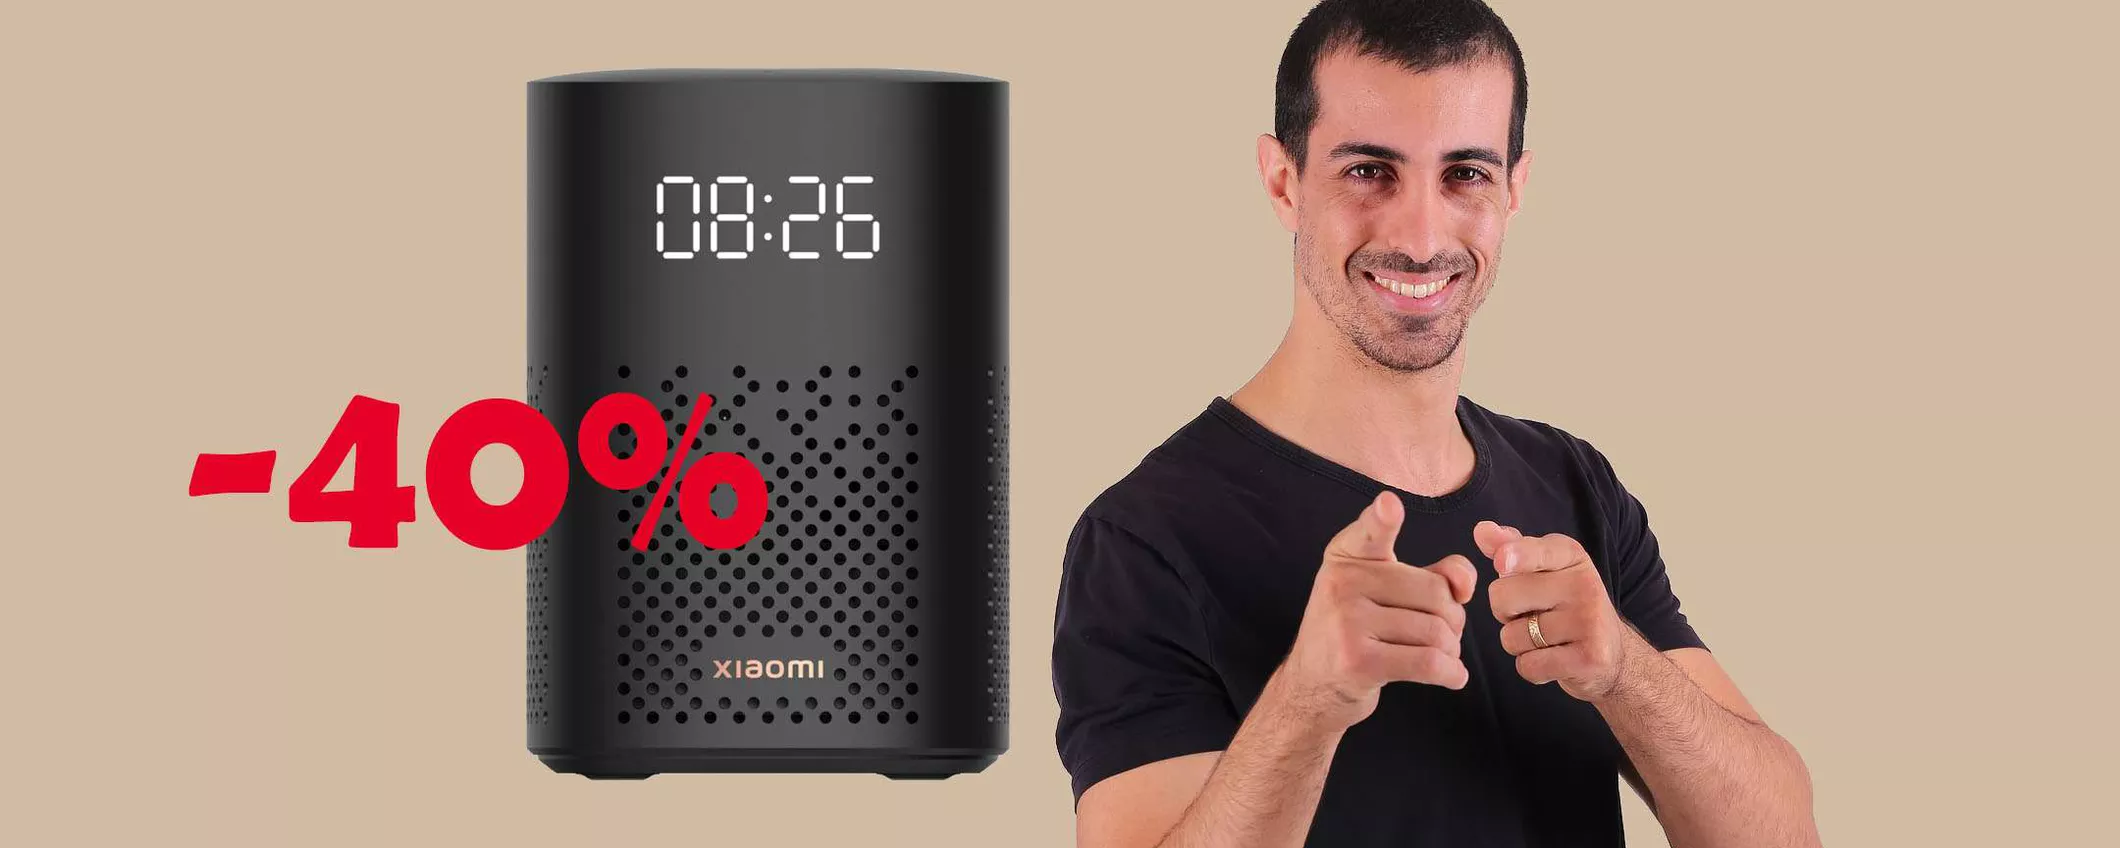 Xiaomi Smart Speaker in MEGA offerta: sconto FOLLE del 40%